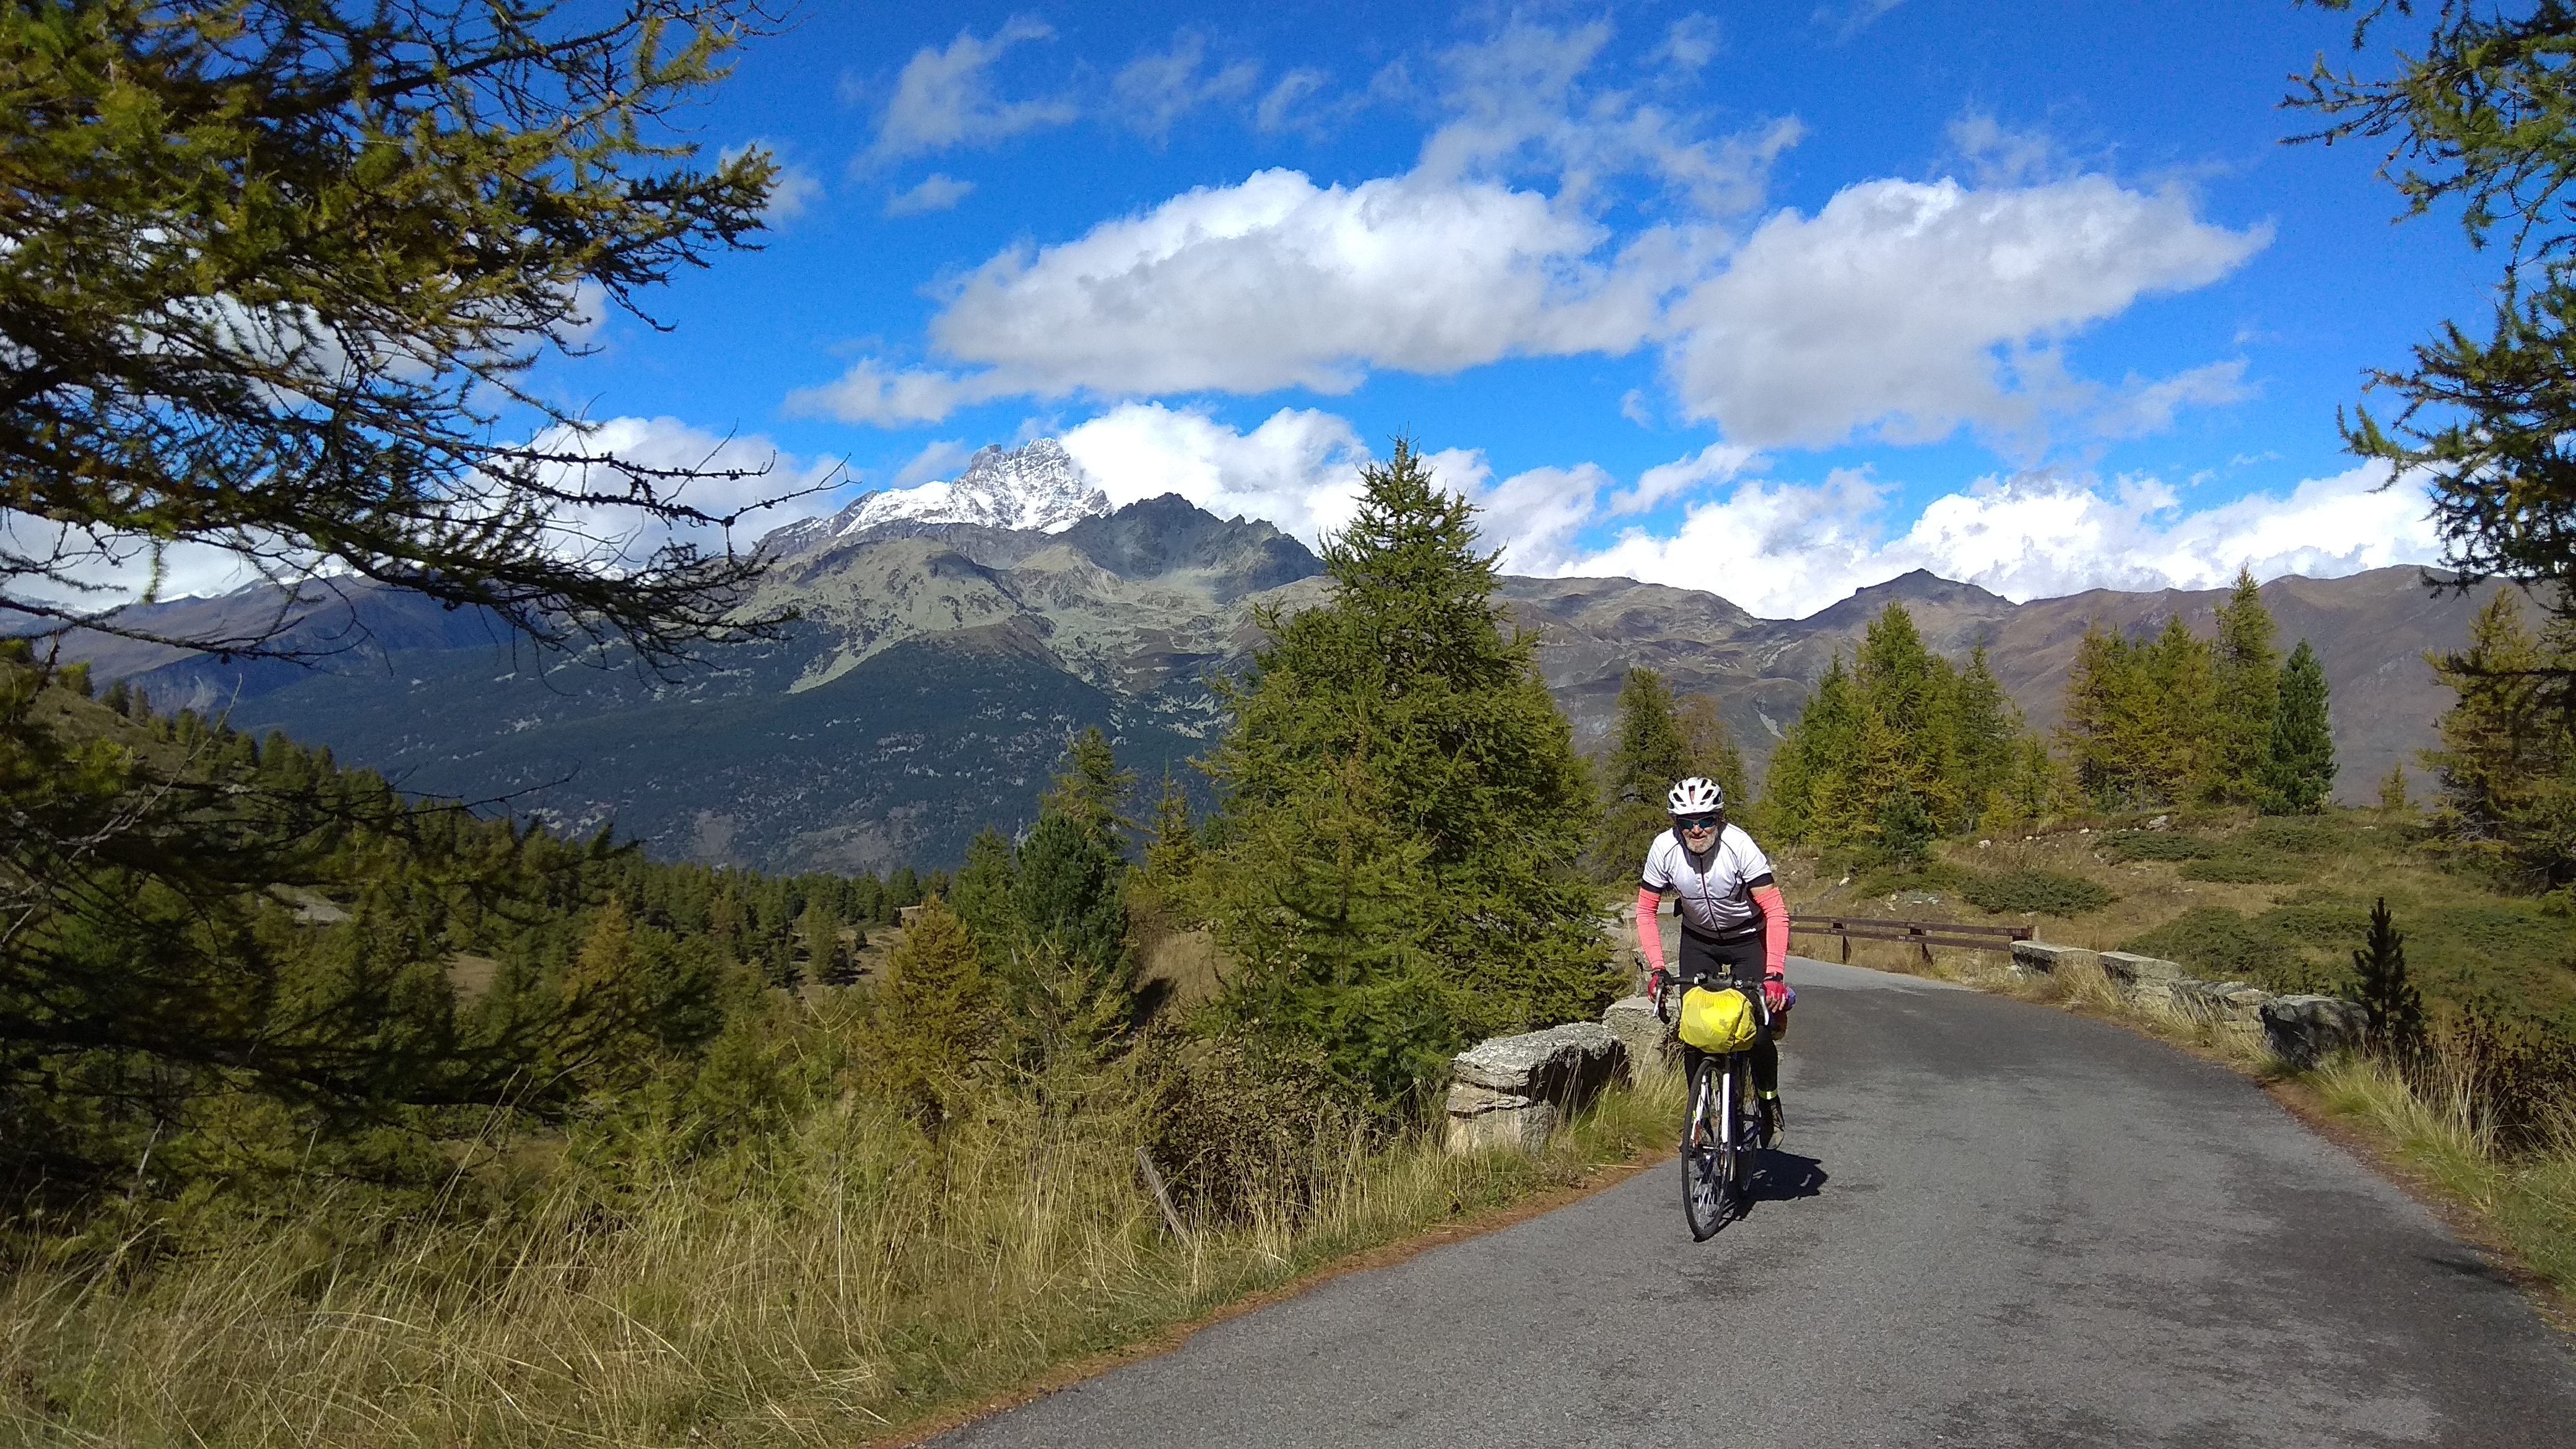 Cole di Sampeyre, 3841 m Monviso w tle, podjazd na przelecz rowerem,  szukam  partnerki na rower,